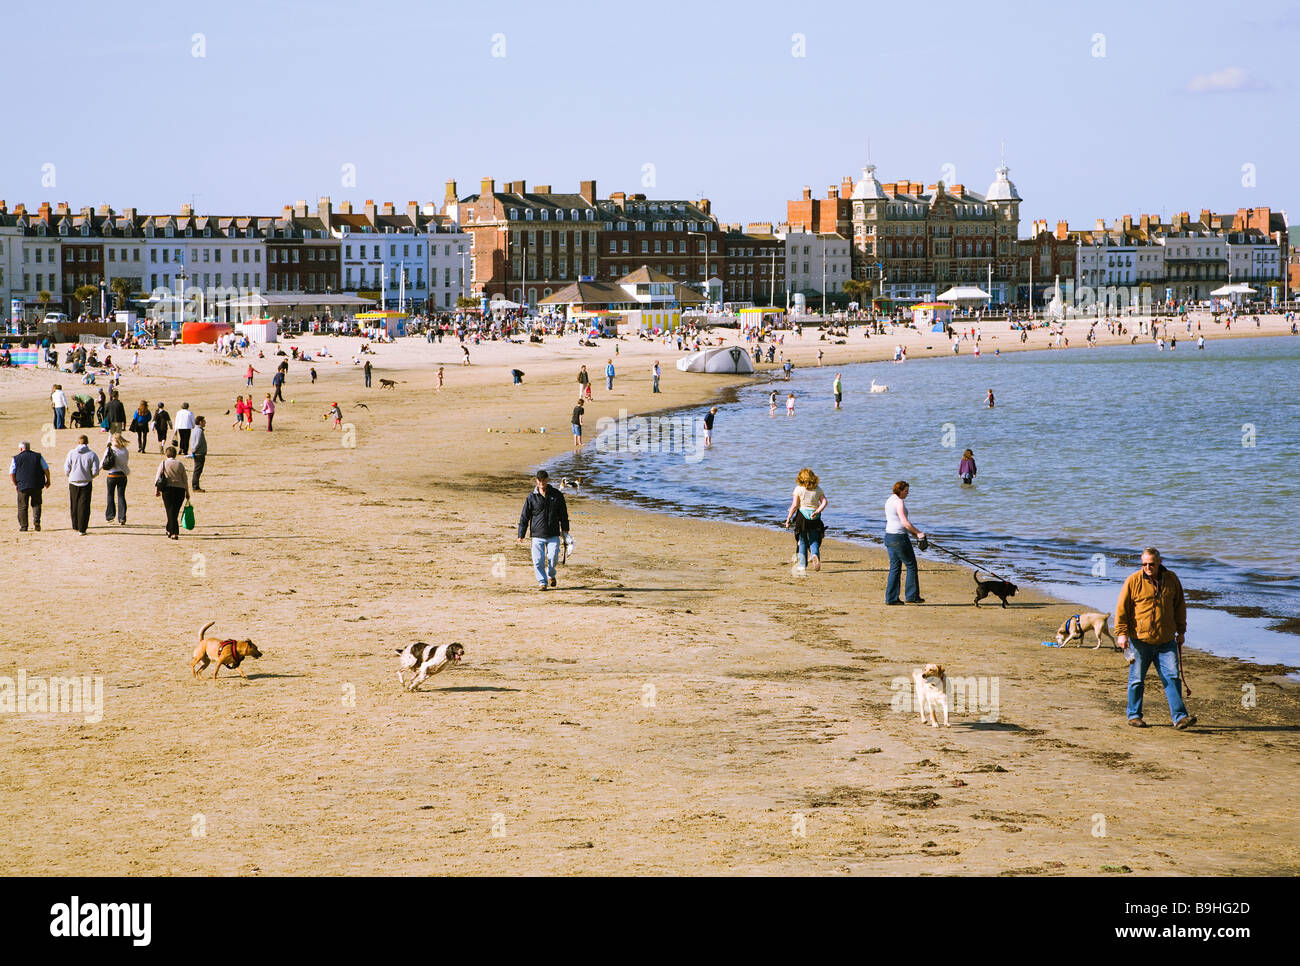 Les gens promènent leurs chiens sur la plage de Weymouth. Le Dorset. UK. Maison de vacances resort hôtels et maisons d'hôtes dans l'arrière-plan. Banque D'Images